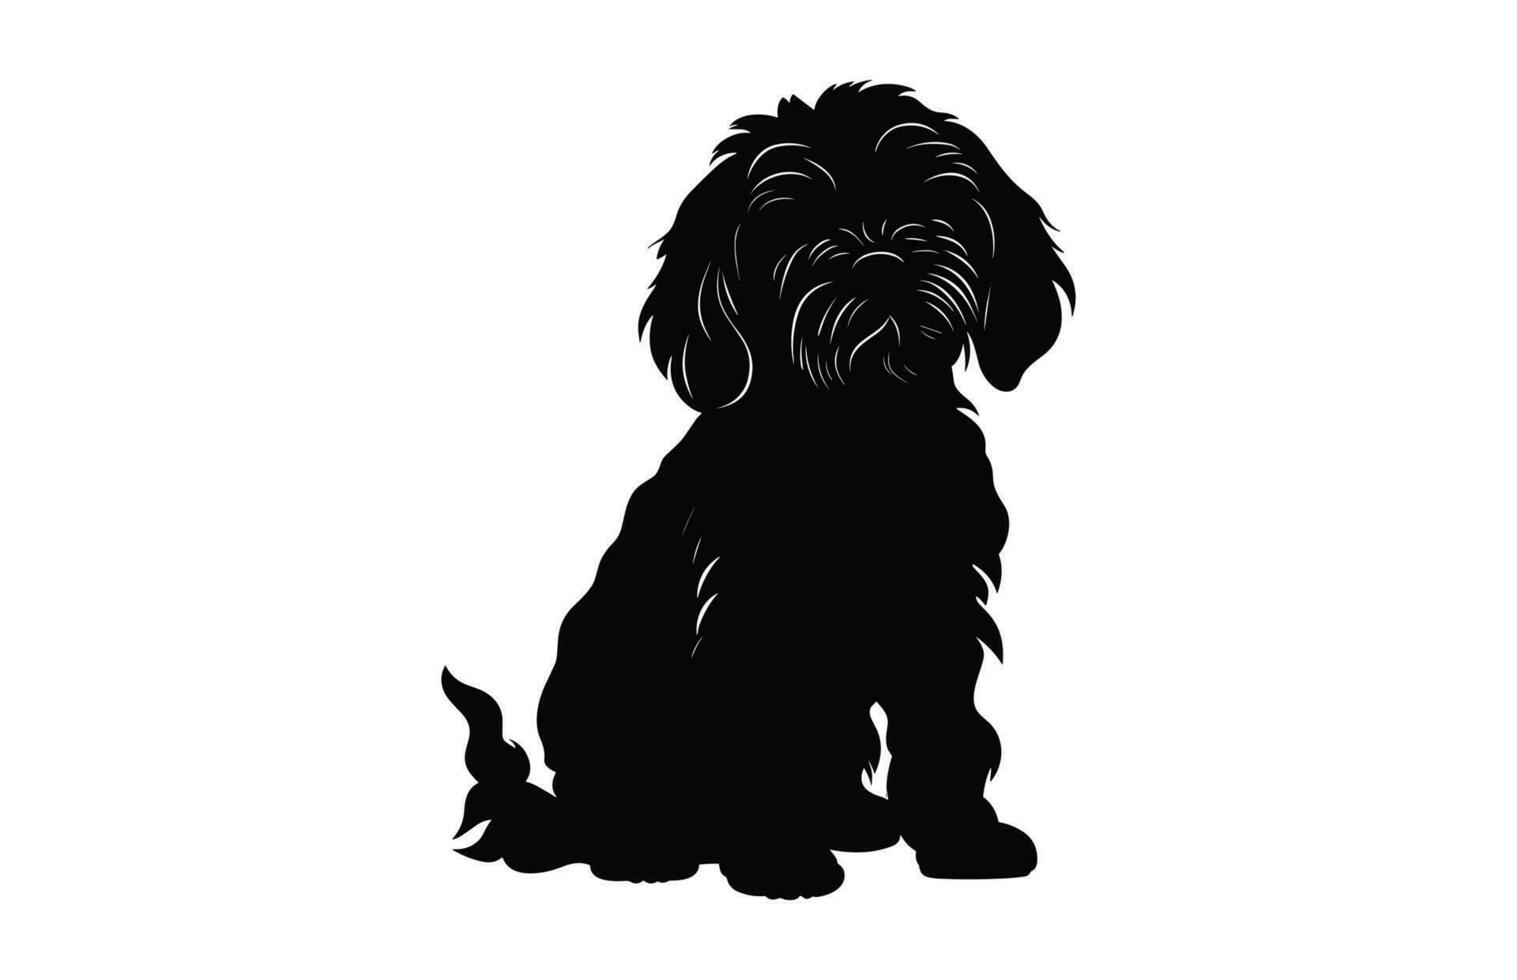 Cockapoo Hund Vektor schwarz Silhouette isoliert auf ein Weiß Hintergrund